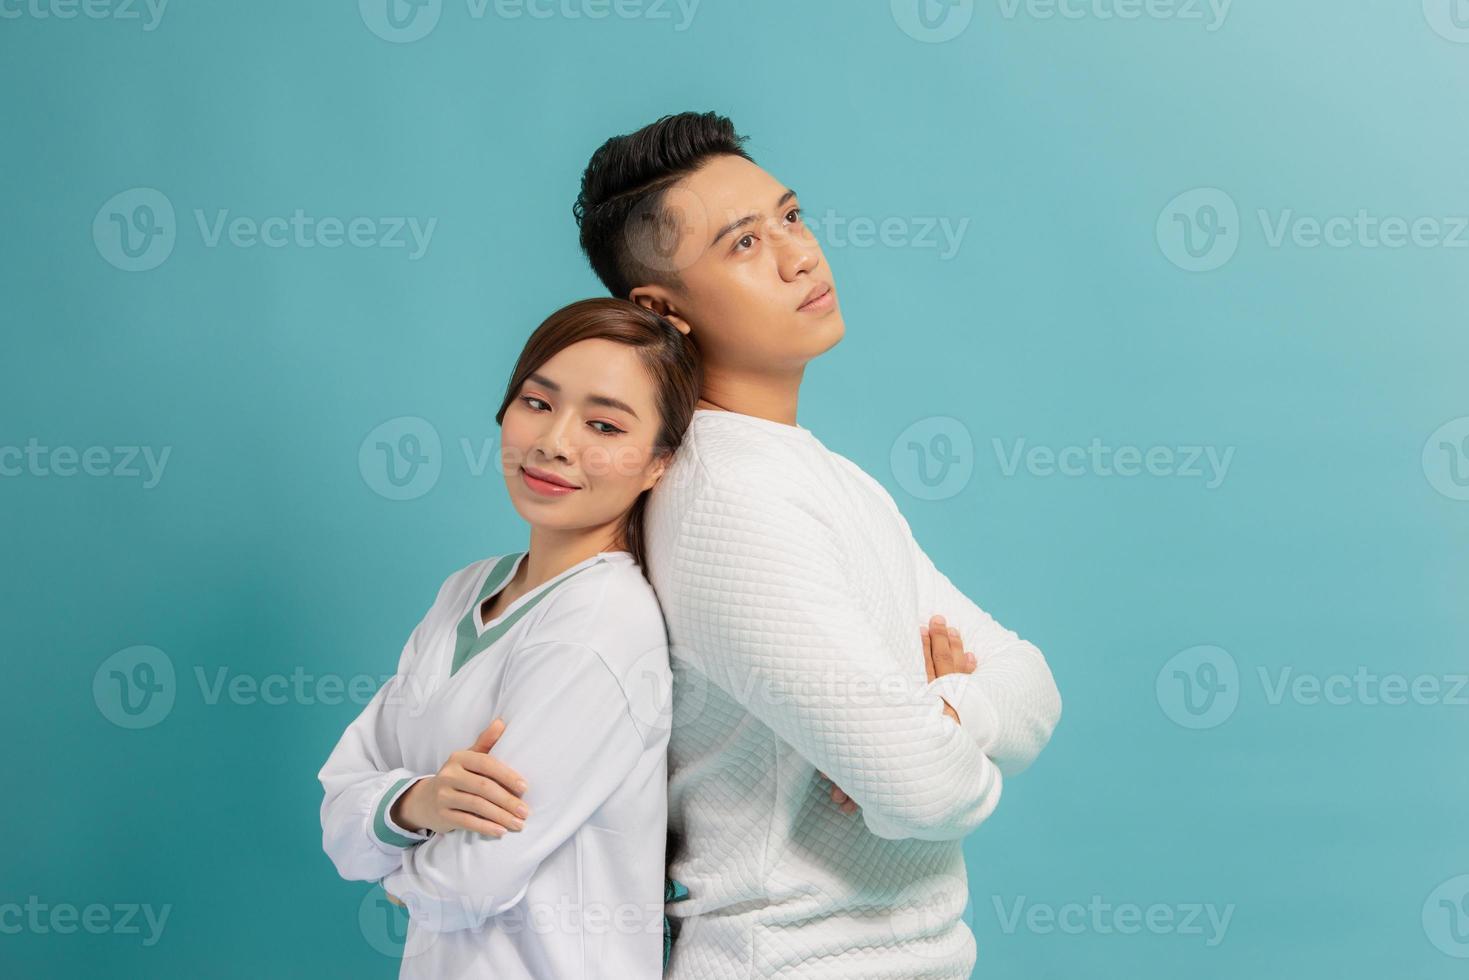 Studiofoto eines hübschen, fröhlichen Paares, das die Hände auf der Brust hält und glücklich lacht, während es über blauem Hintergrund steht foto